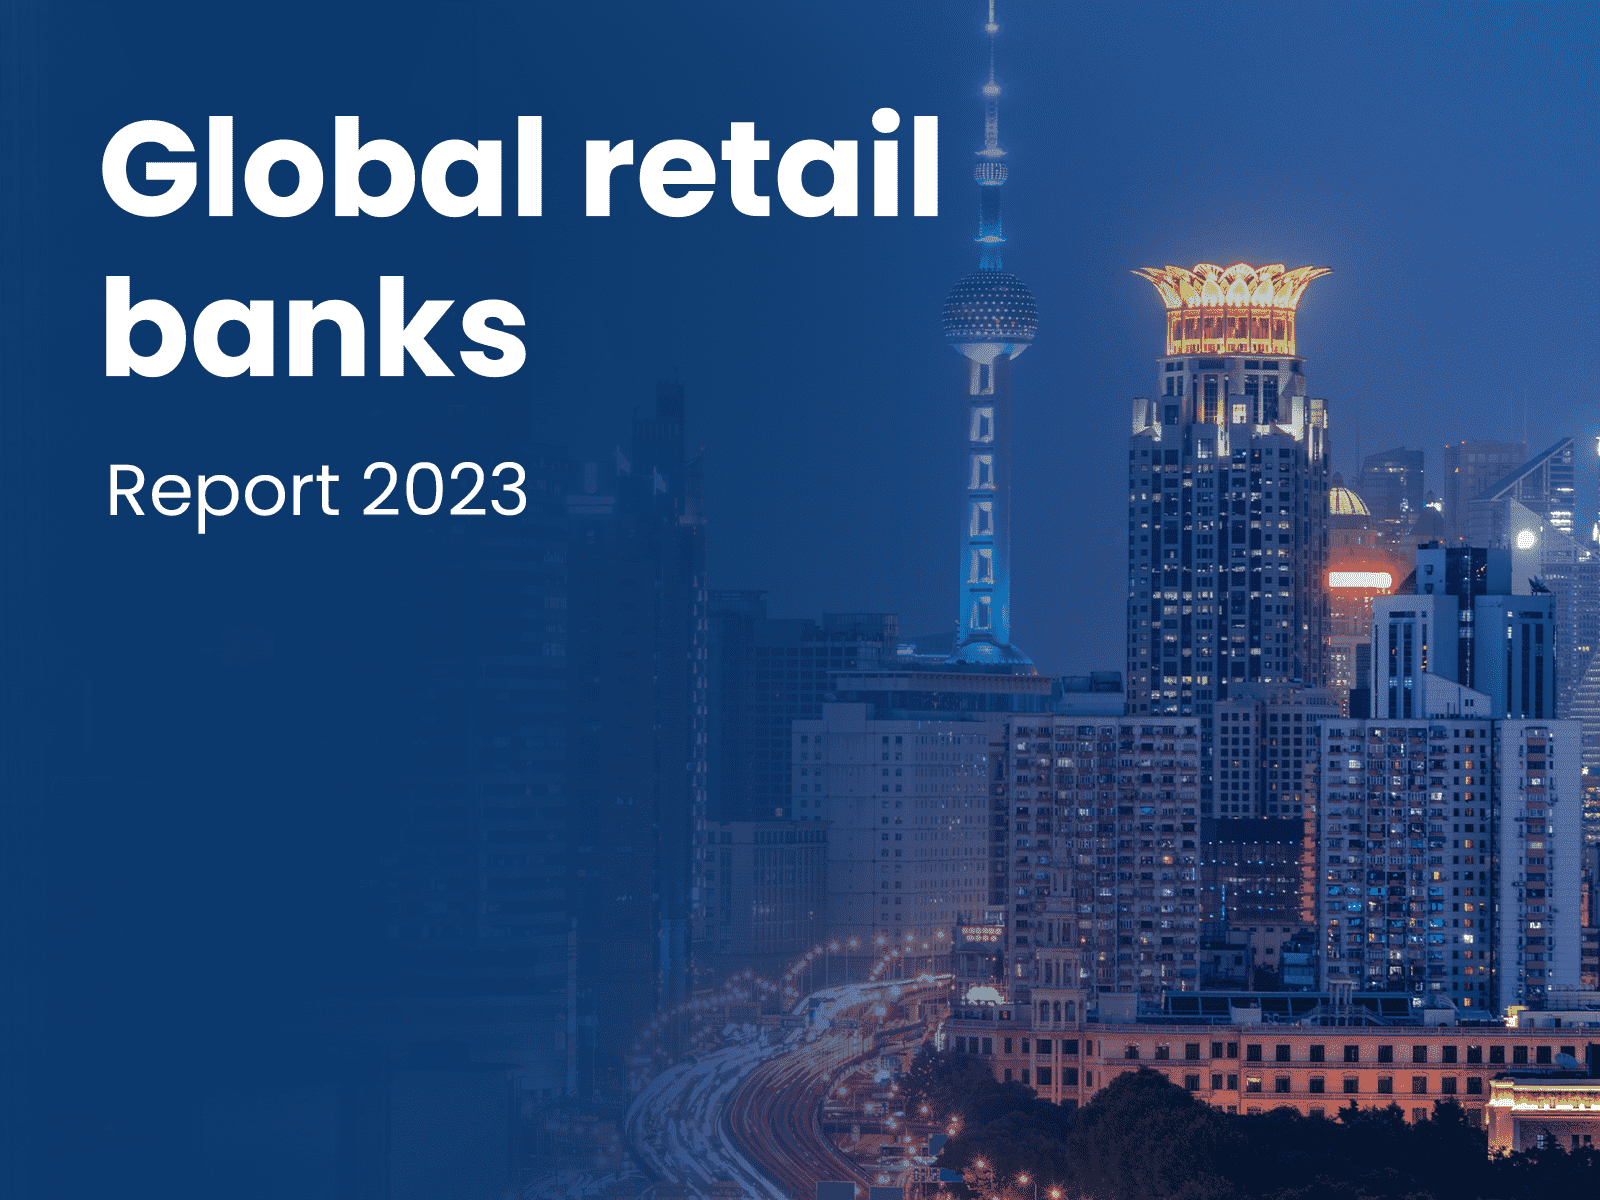 Global retail banks report 2023